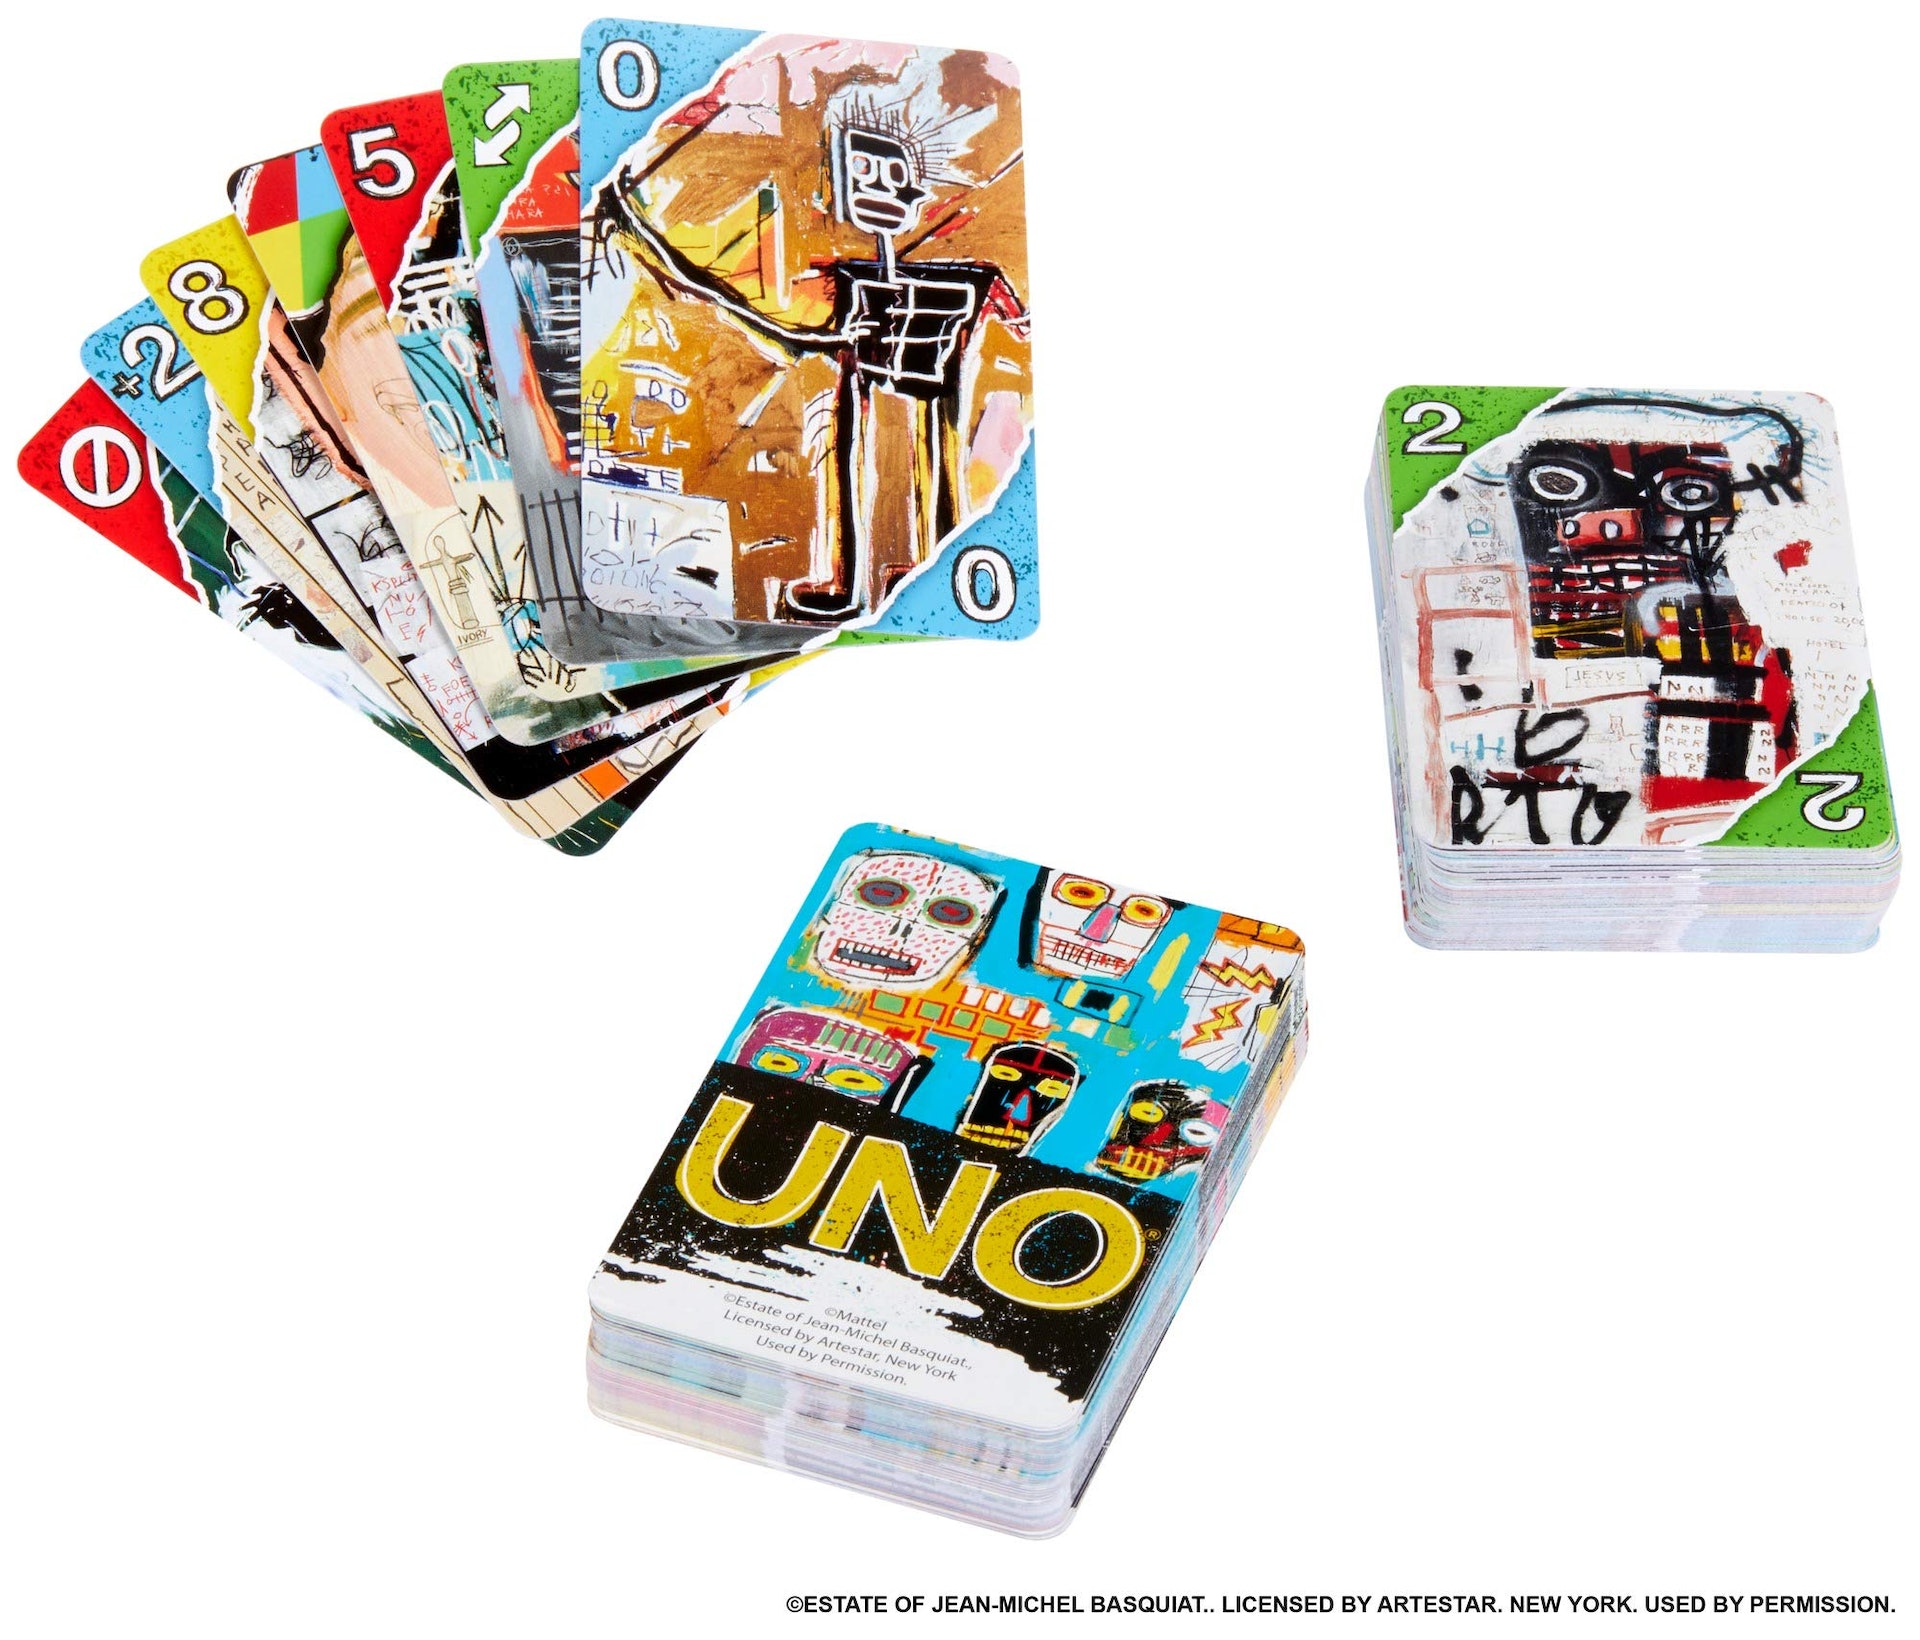 村上隆與UNO合作「最強聯乘藝術家」帶來史上最眼花繚亂遊戲卡